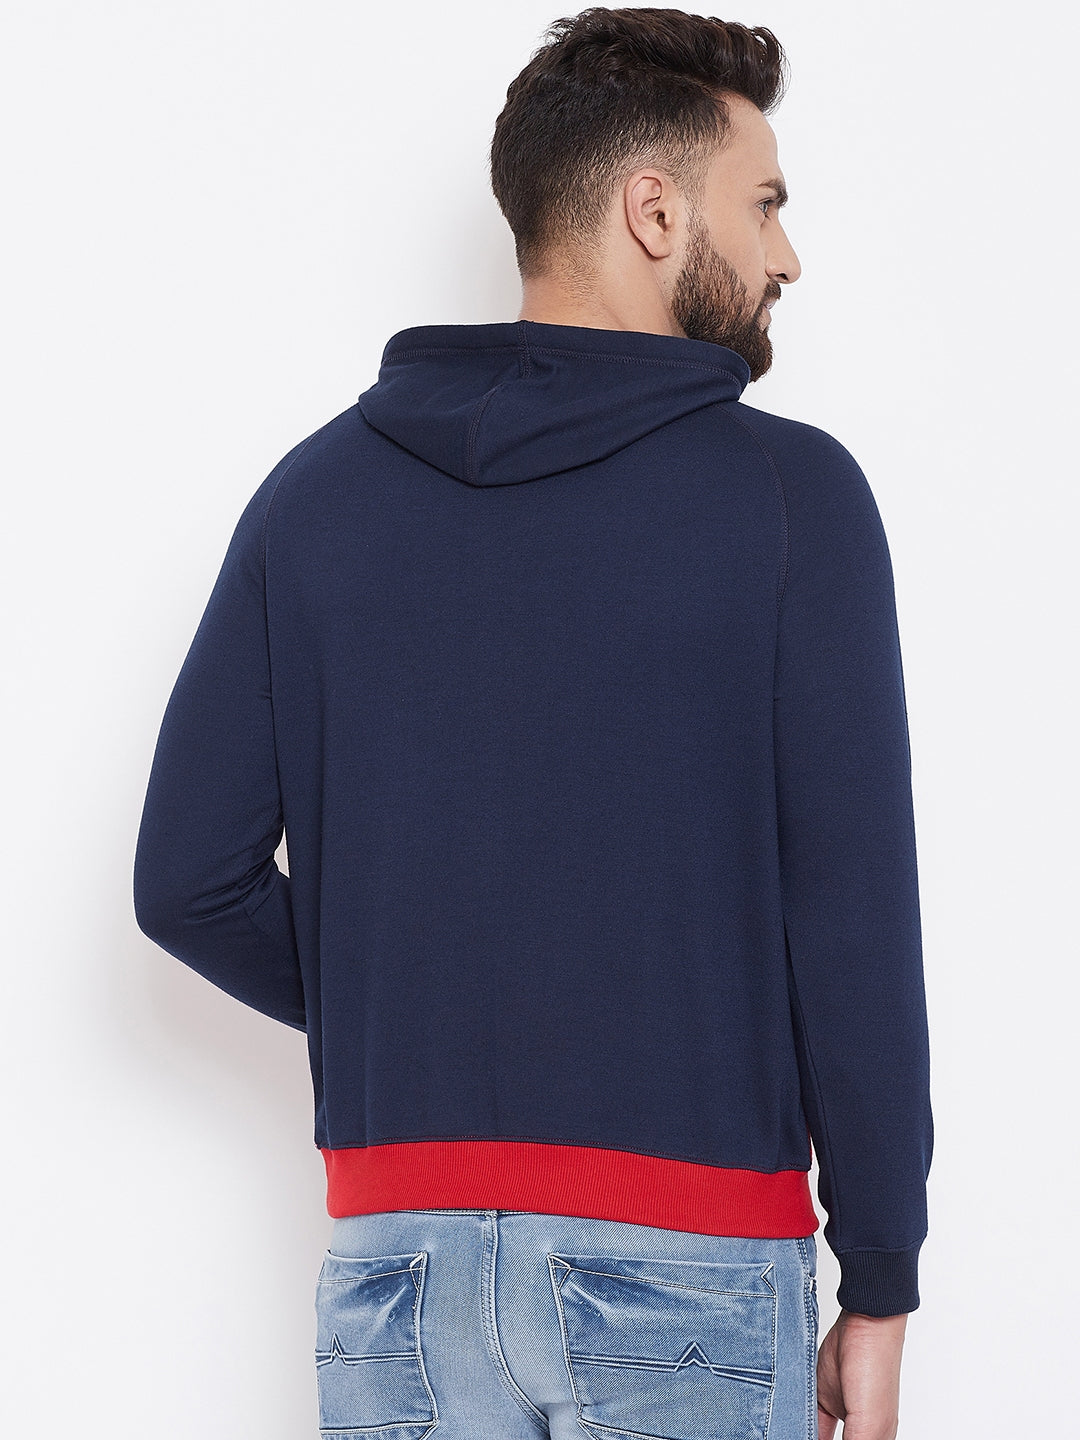 Men's Printed  Hooded Sweatshirt